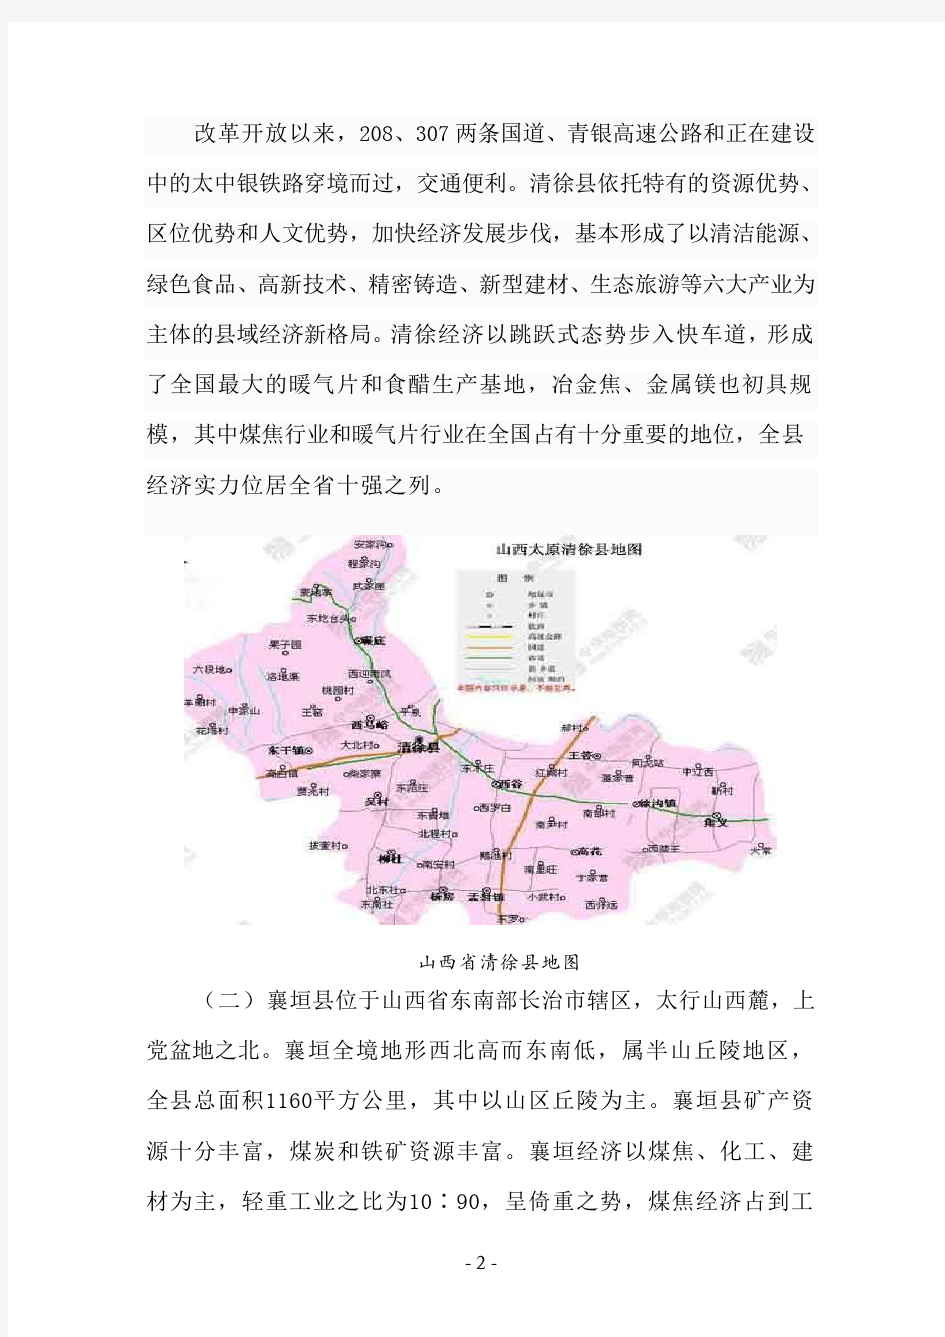 清徐县县域经济发展状况分析